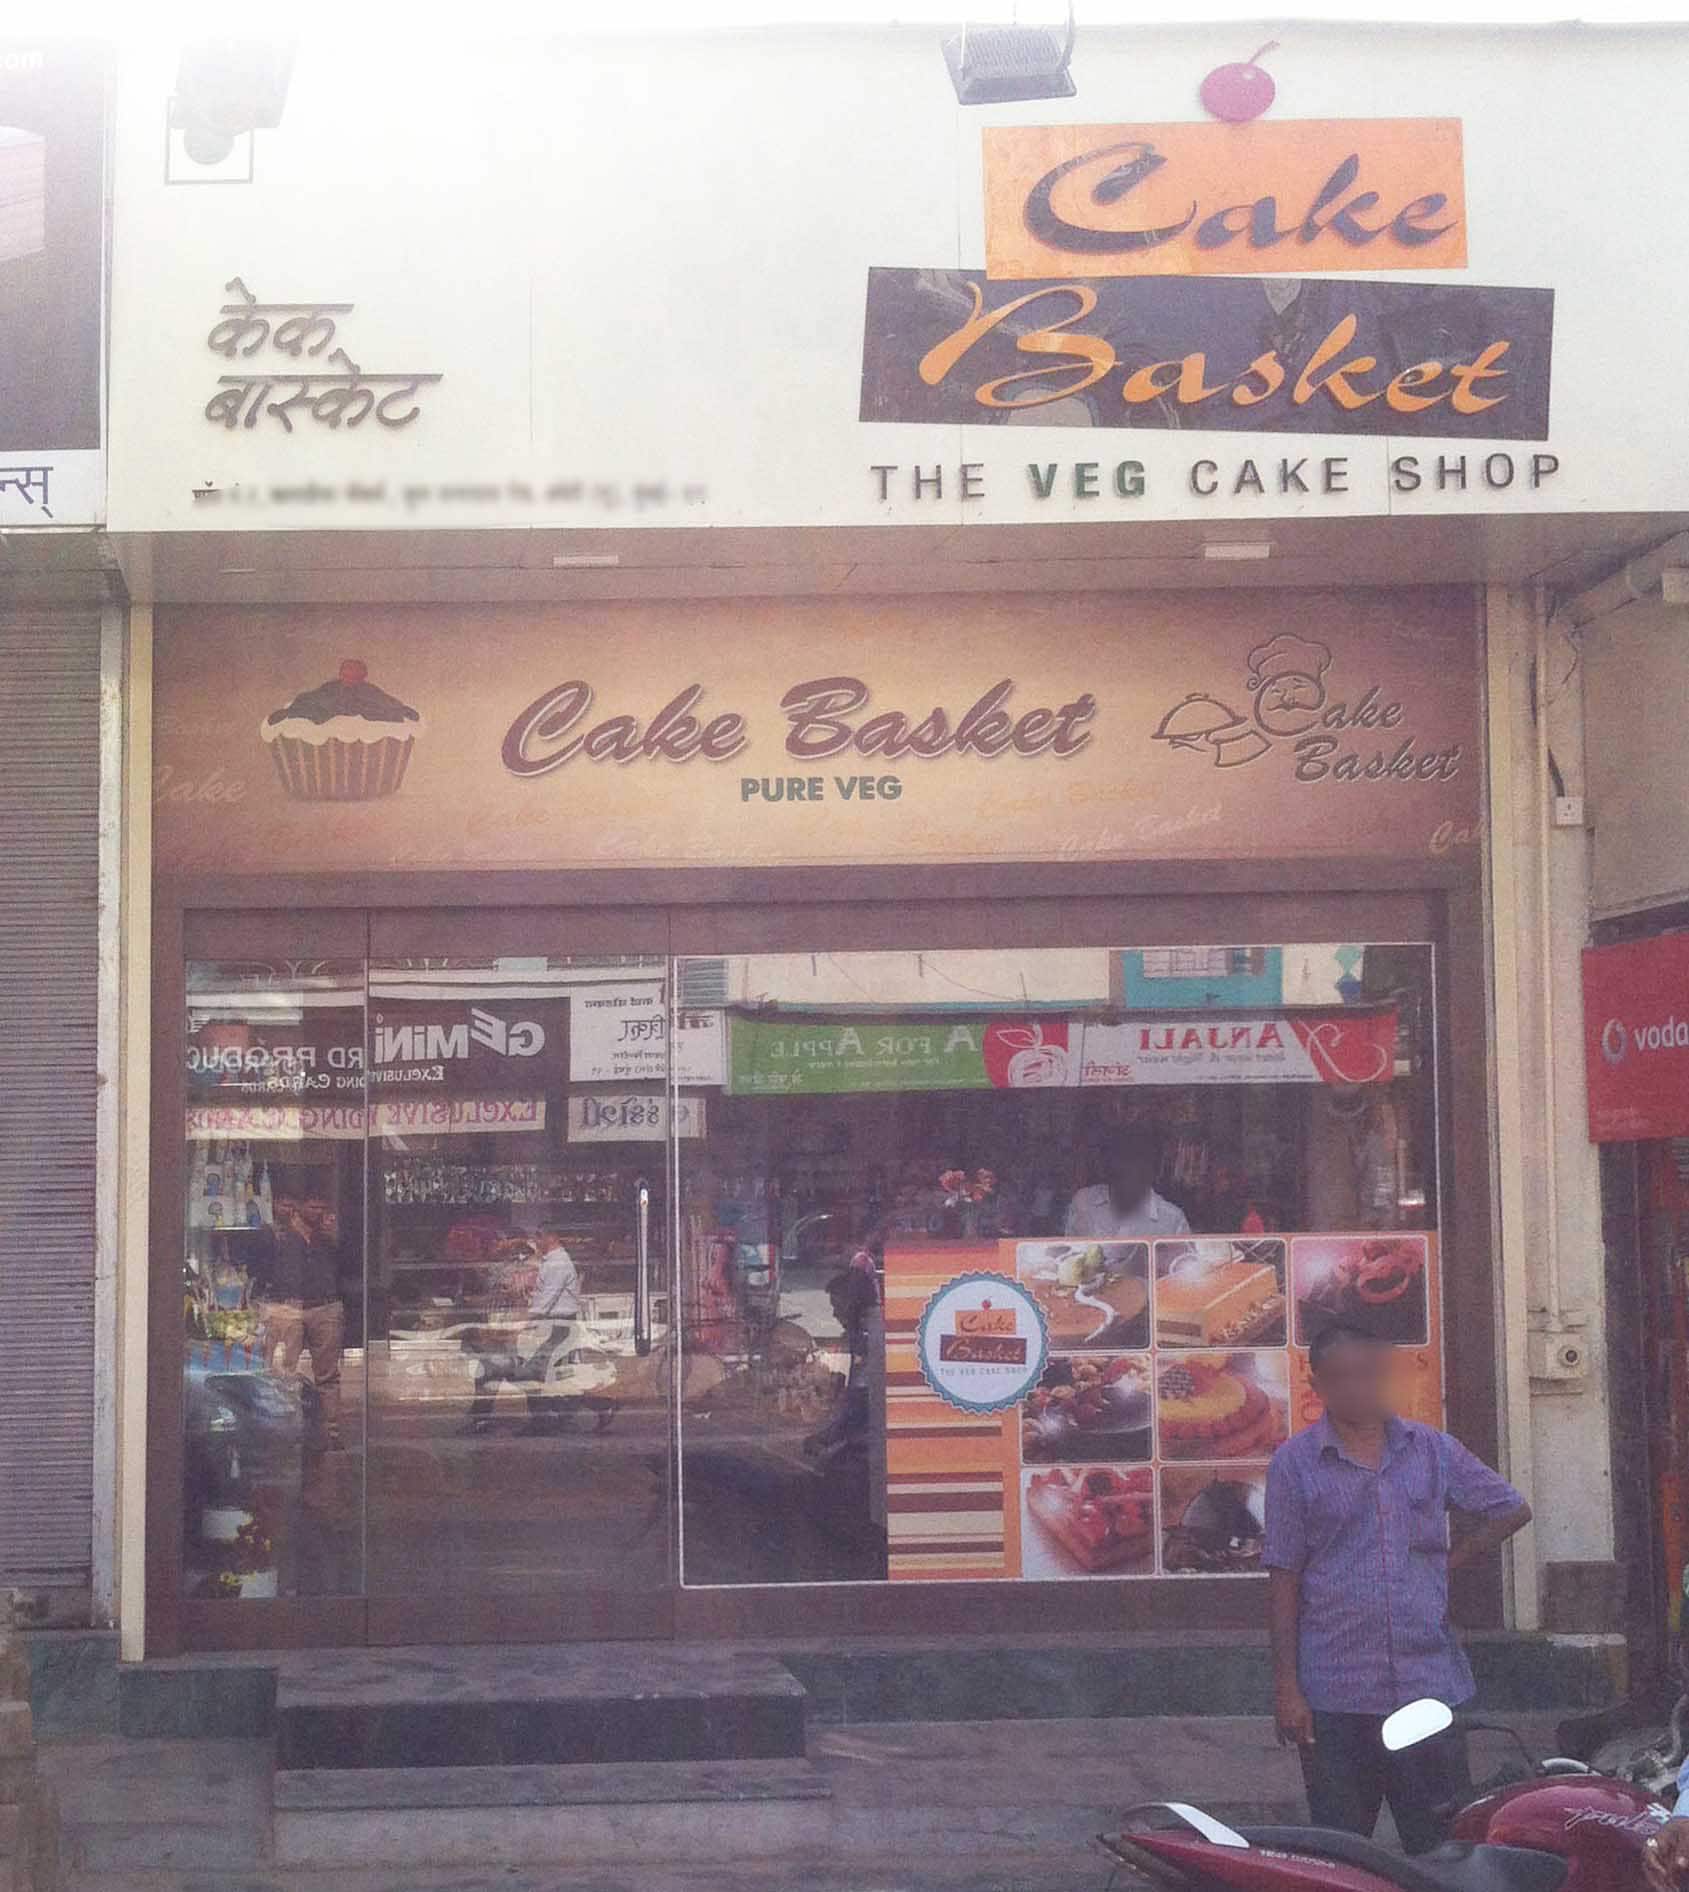 Patisserie & Cake Shop in Andheri, Mumbai |The Pastry Shop in Andheri